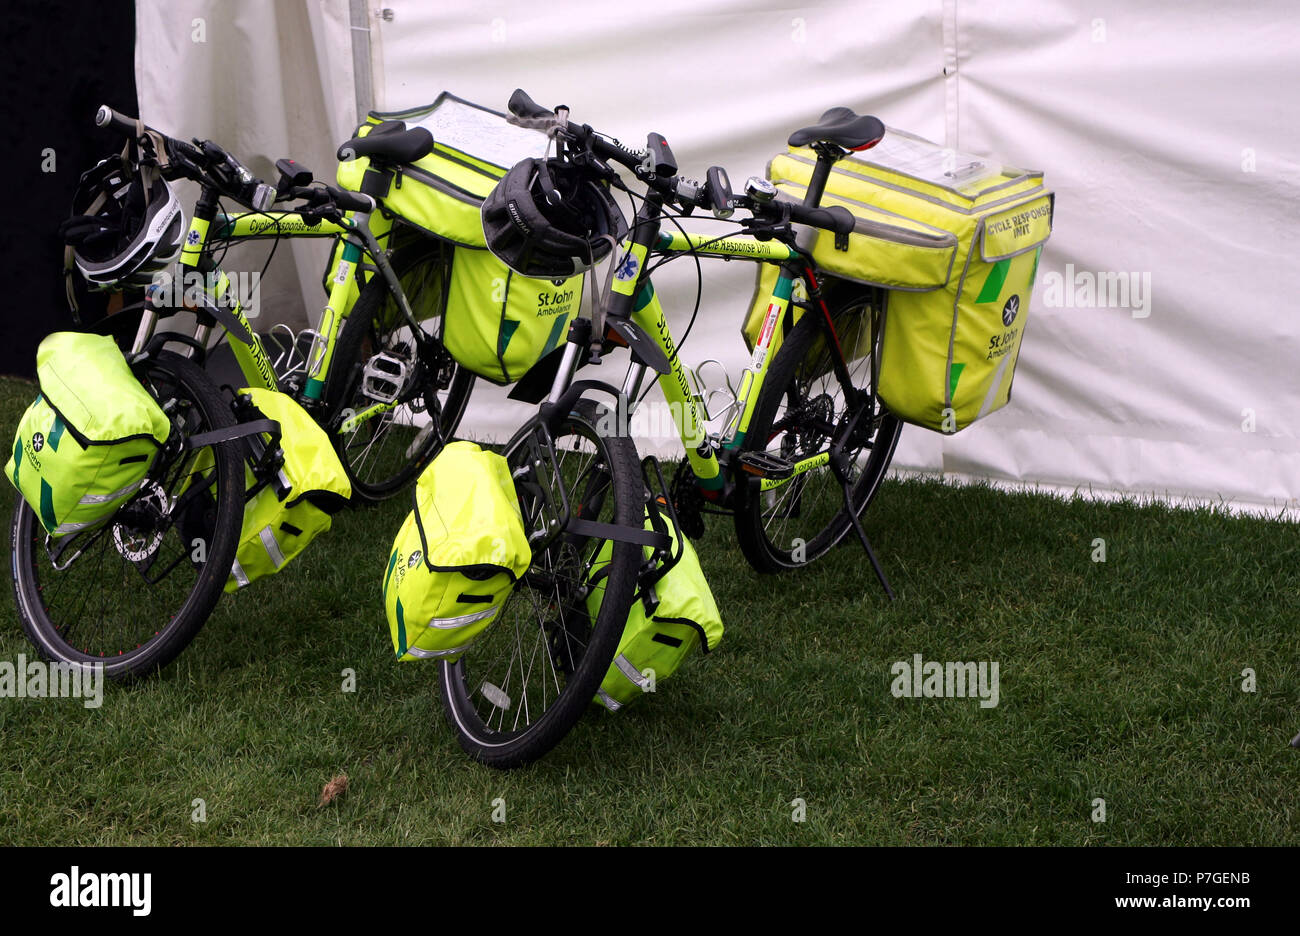 Guildford, Inghilterra - 28 Maggio 2018: due paramedico biciclette appartenenti alla St John Ambulance movimento, un volontario di primo soccorso organizzazione medica Foto Stock